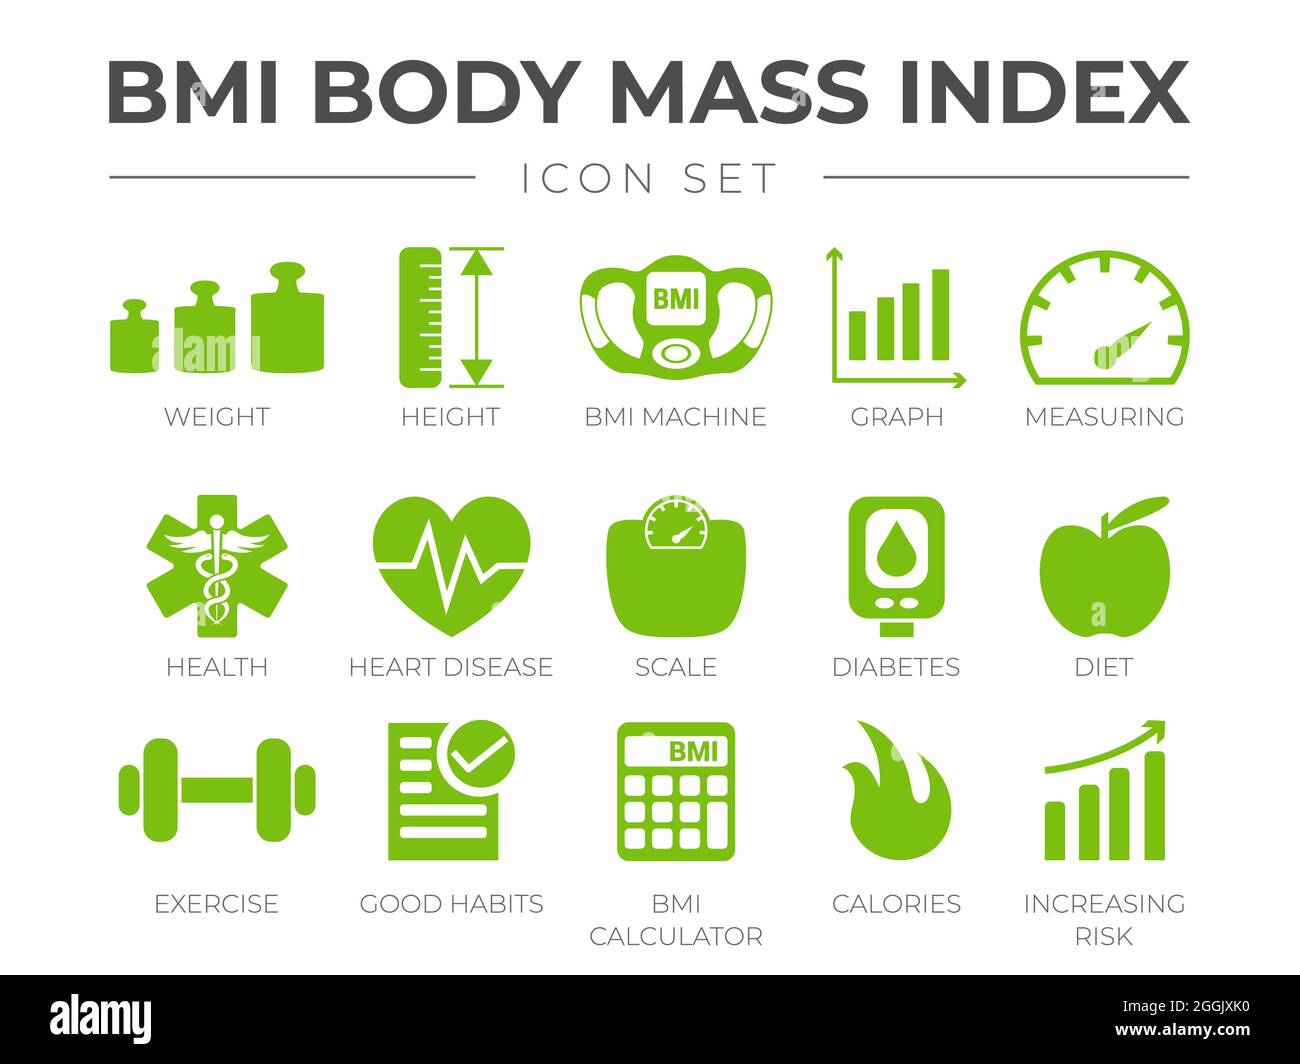 Symbol für BMI-Body-Mass-Index gesetzt. Gewicht, Größe, BMI-Gerät, Diagramm, Messen, Gesundheit, Herzkrankheit, Skala, Diabetes, Diät, Übung, Gewohnheiten, BMI Calcu Stock Vektor